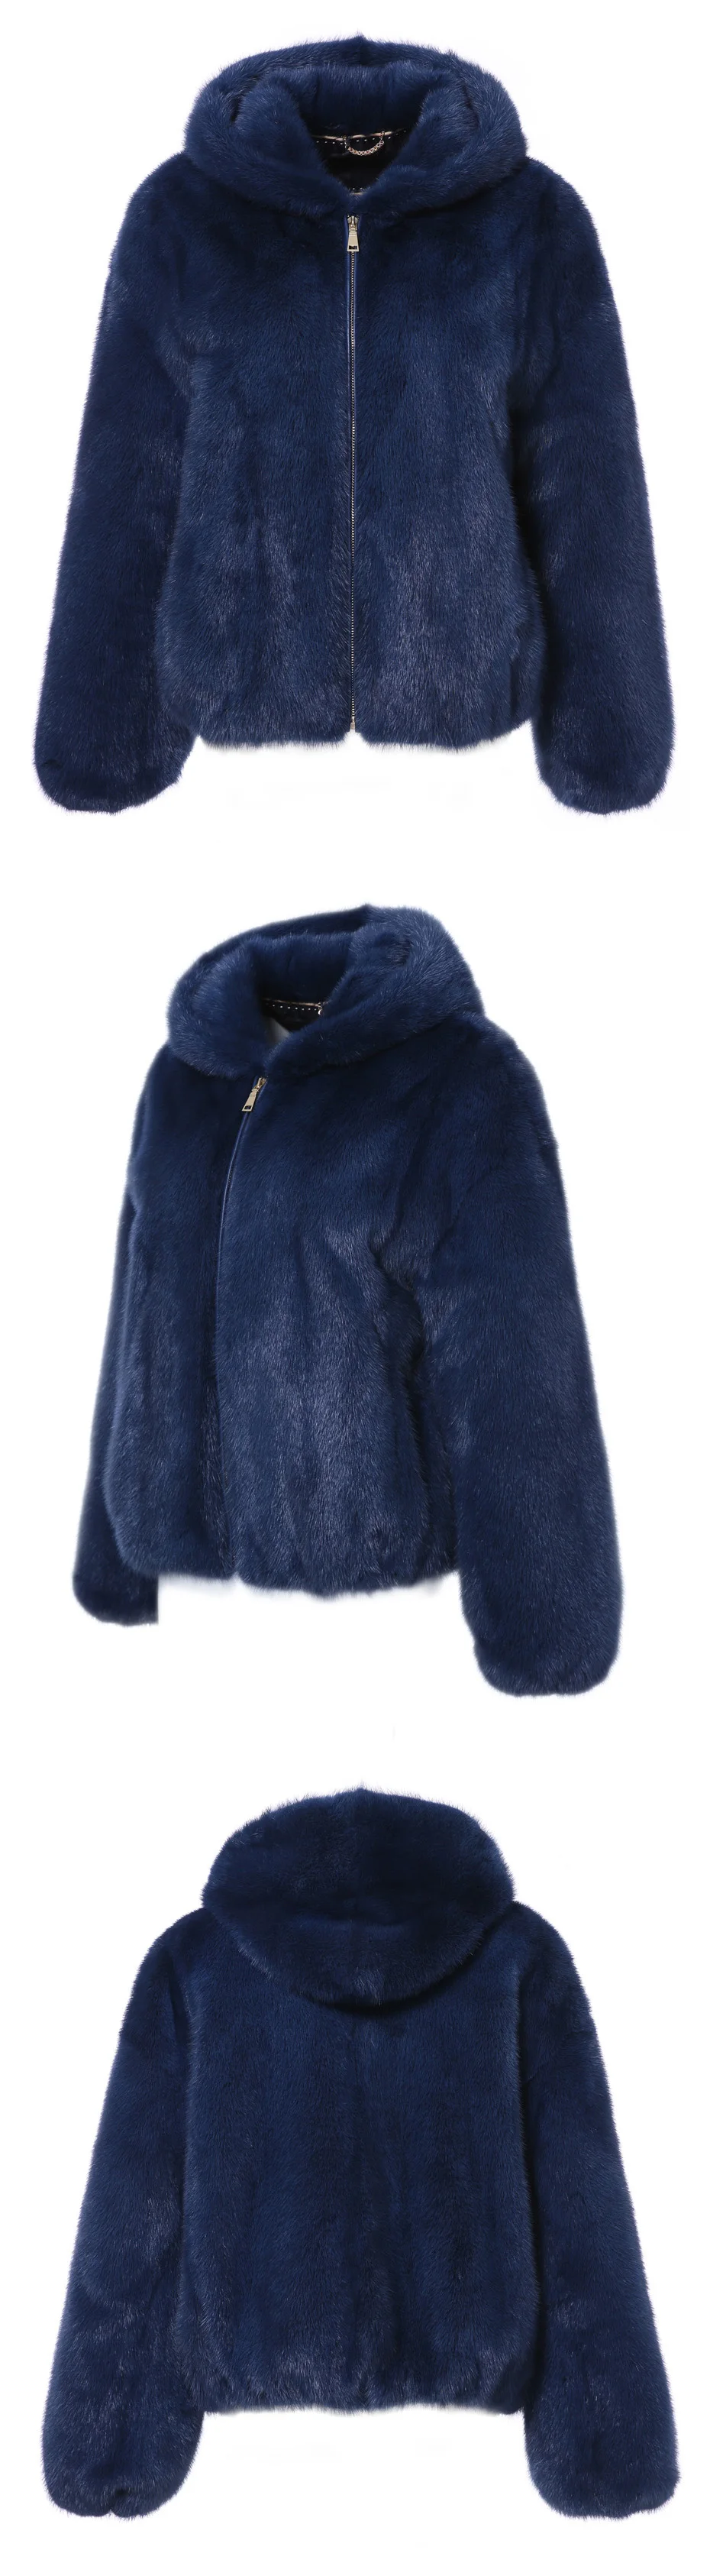 Зимнее пальто из натурального меха норки, женское модное пальто из меха норки, пальто высшего качества из натурального меха норки, повседневное зимнее пальто, женская меховая шапка